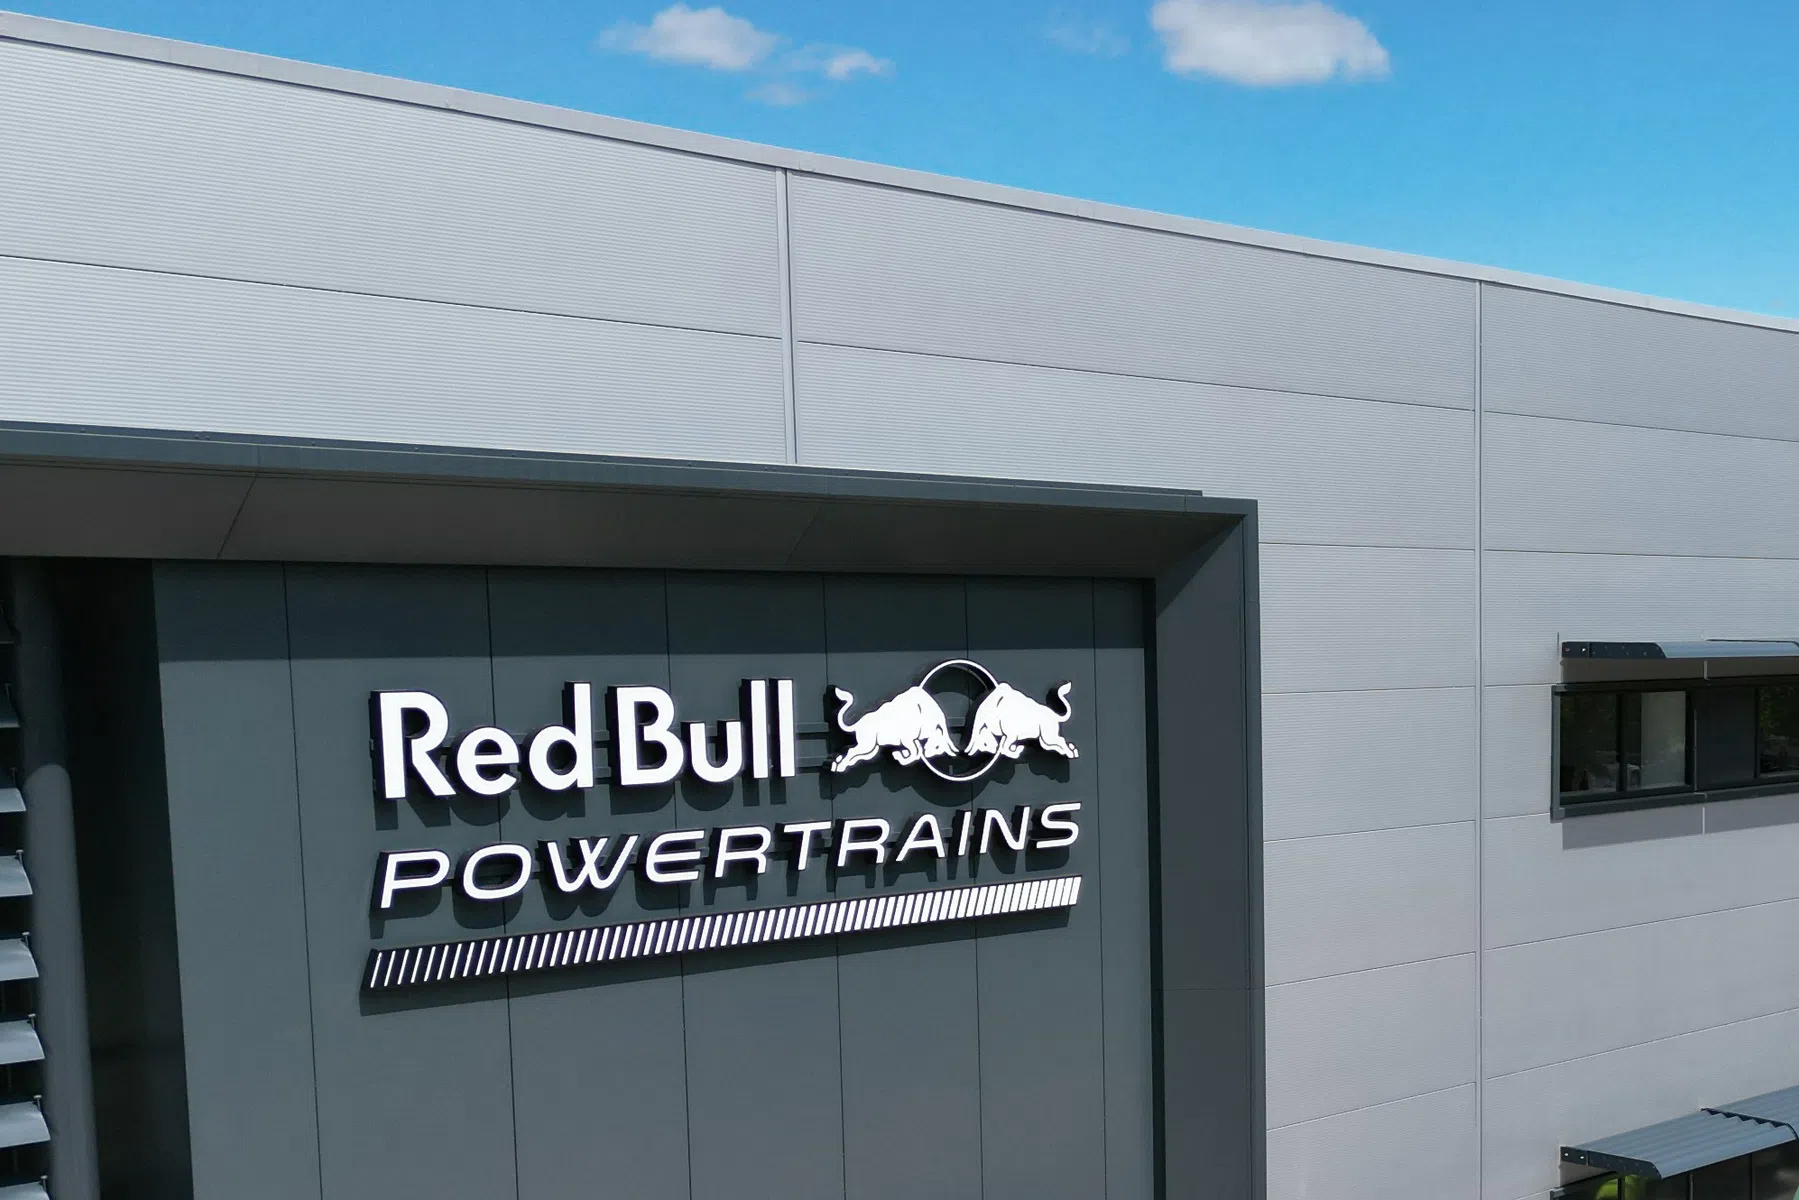 Kein Plan B, falls Red Bull Powertrains scheitert